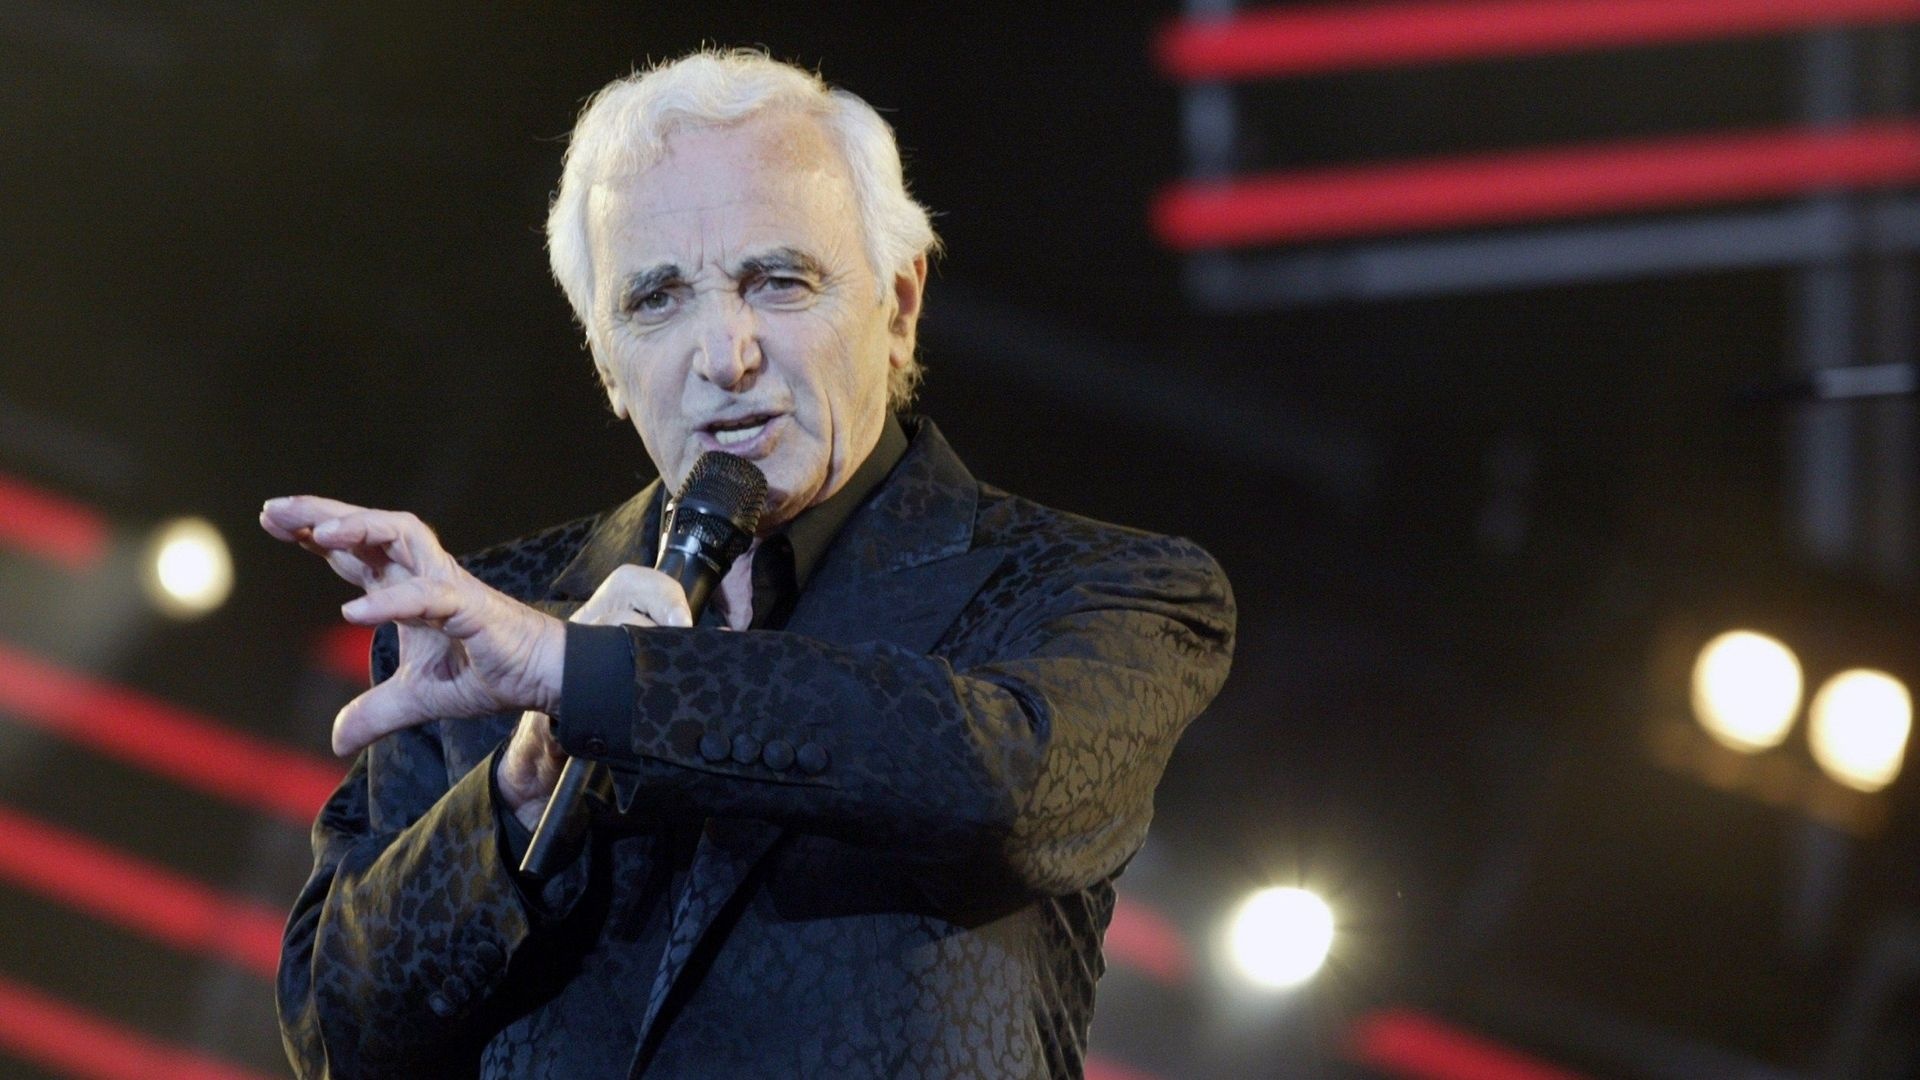 Charles Aznavour, Encore album, RTBF's latest release, 1920x1080 Full HD Desktop